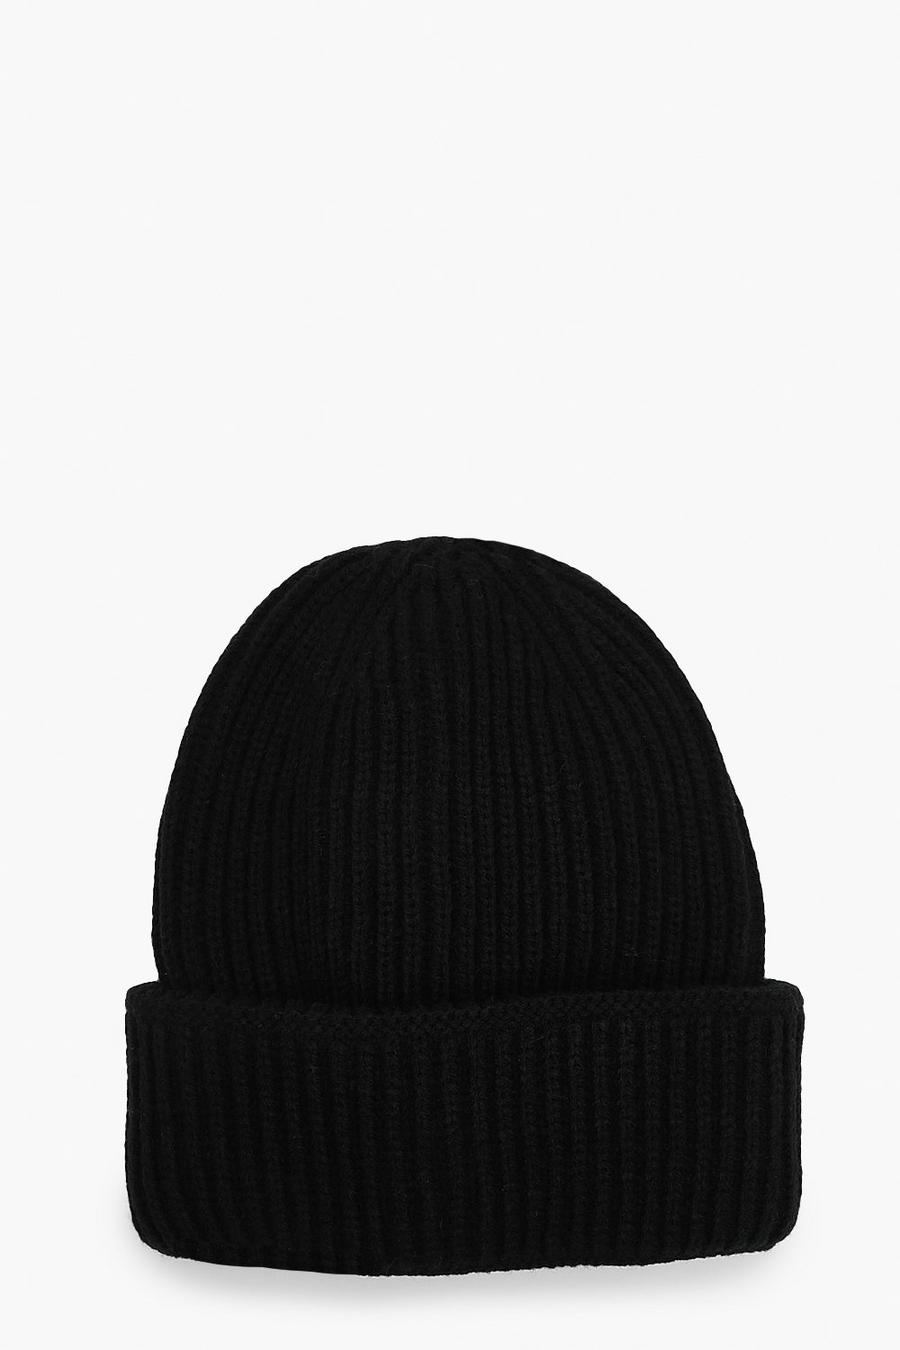 שחור black כובע צמר ארוג